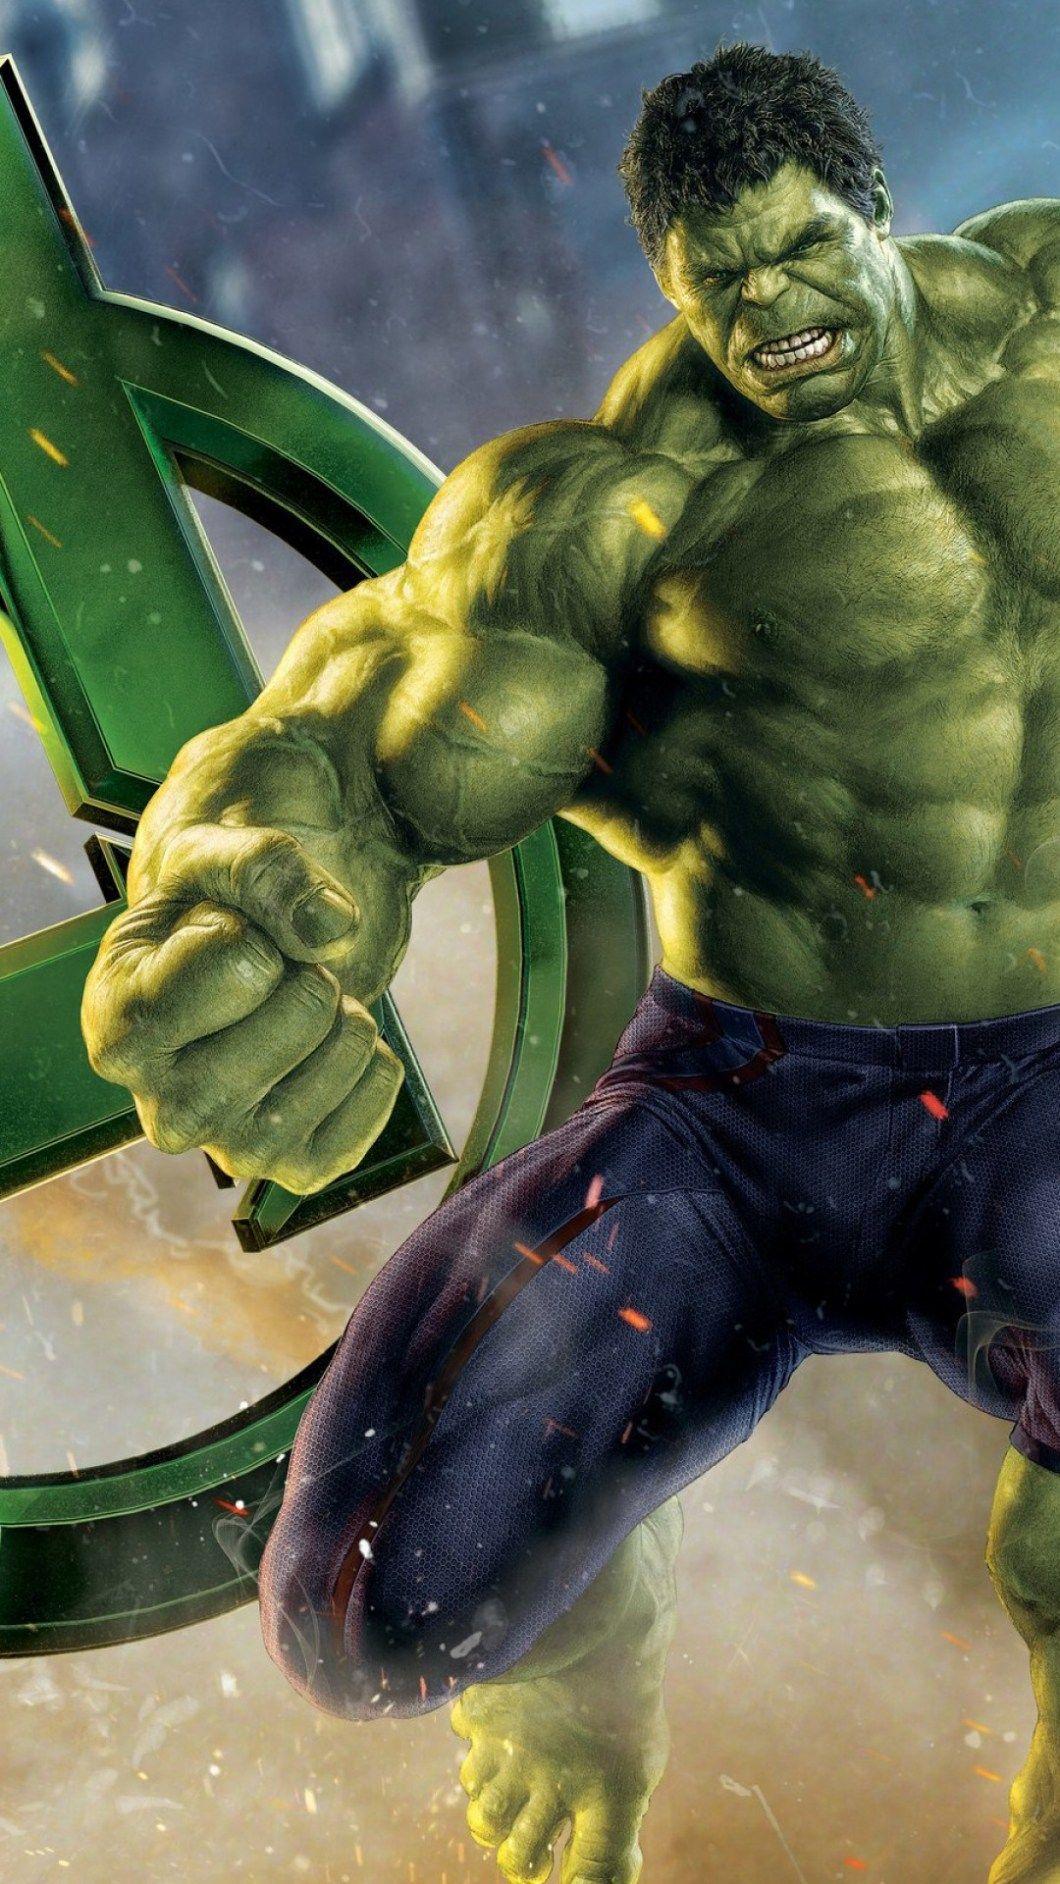 Hulk Images - Free Download on Freepik